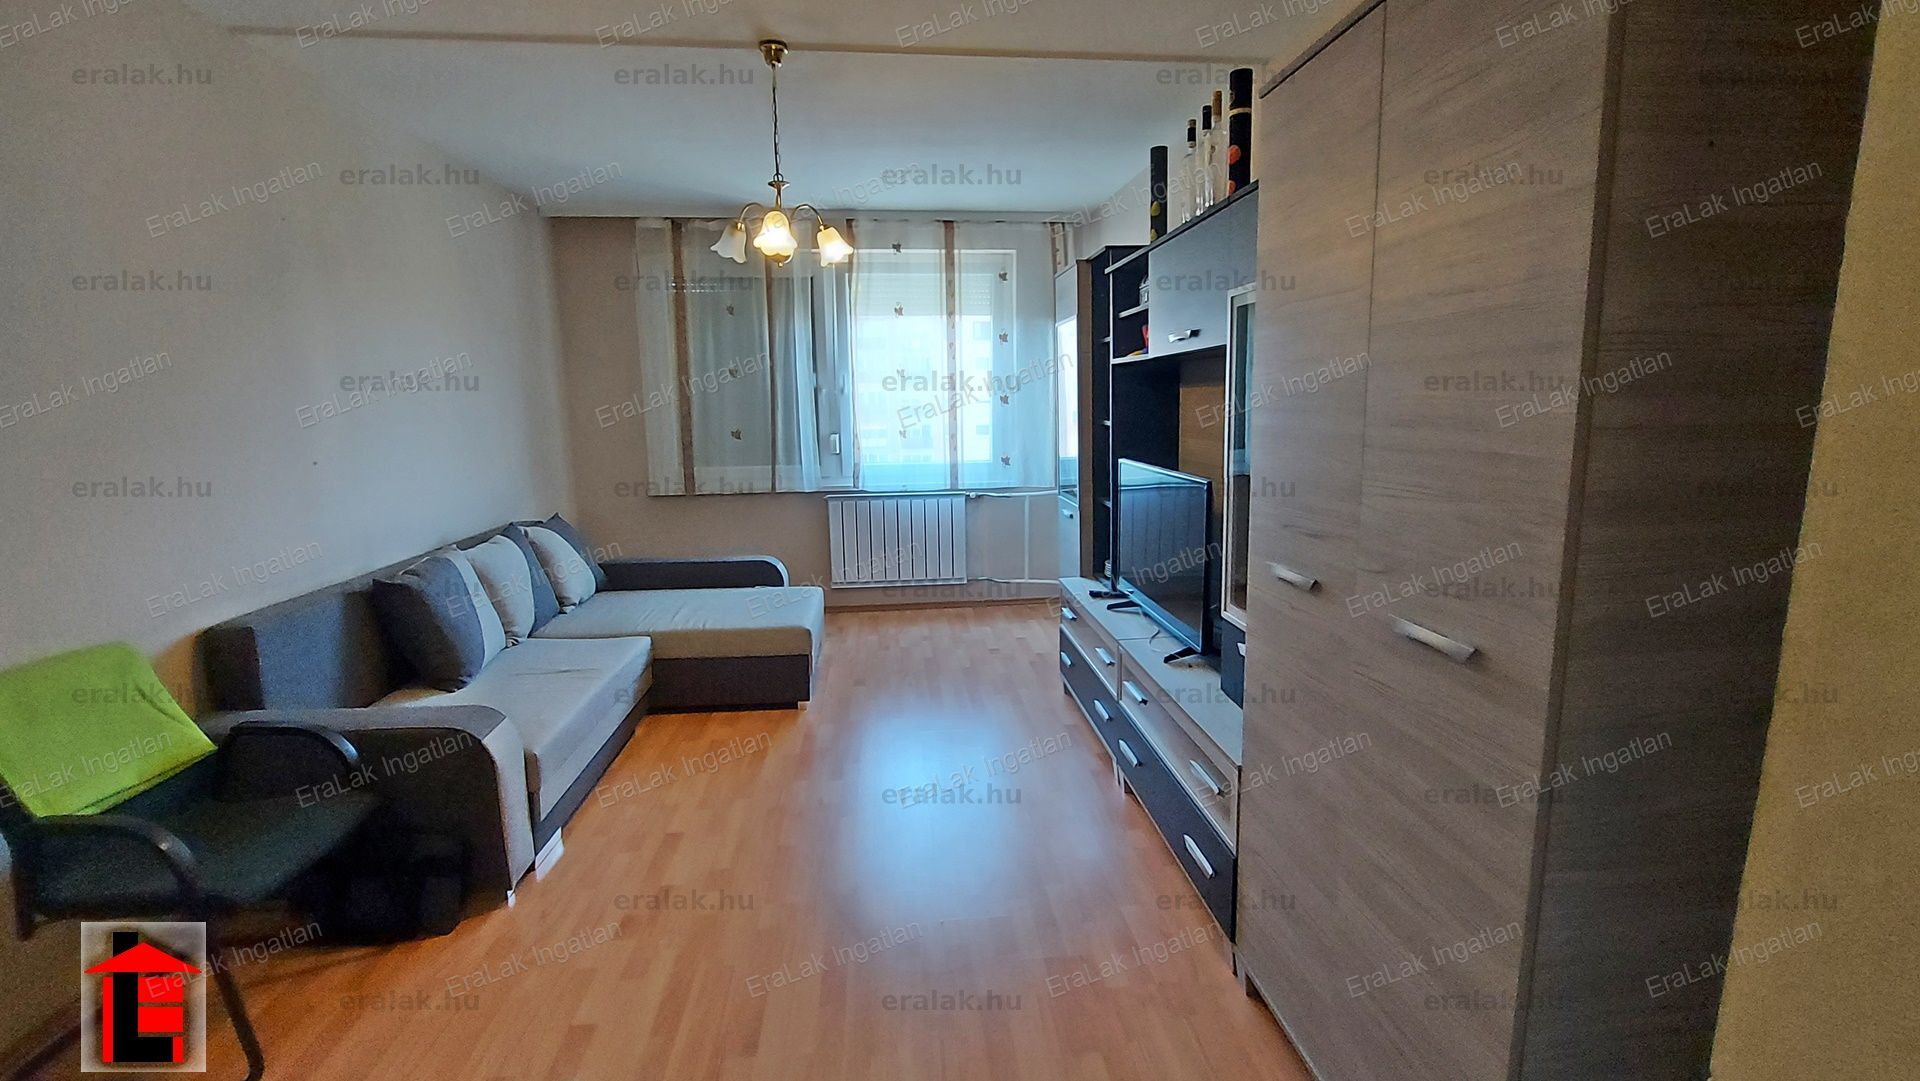 Győr-Marcalvárosi két szoba hallos társasházi lakás eladó.